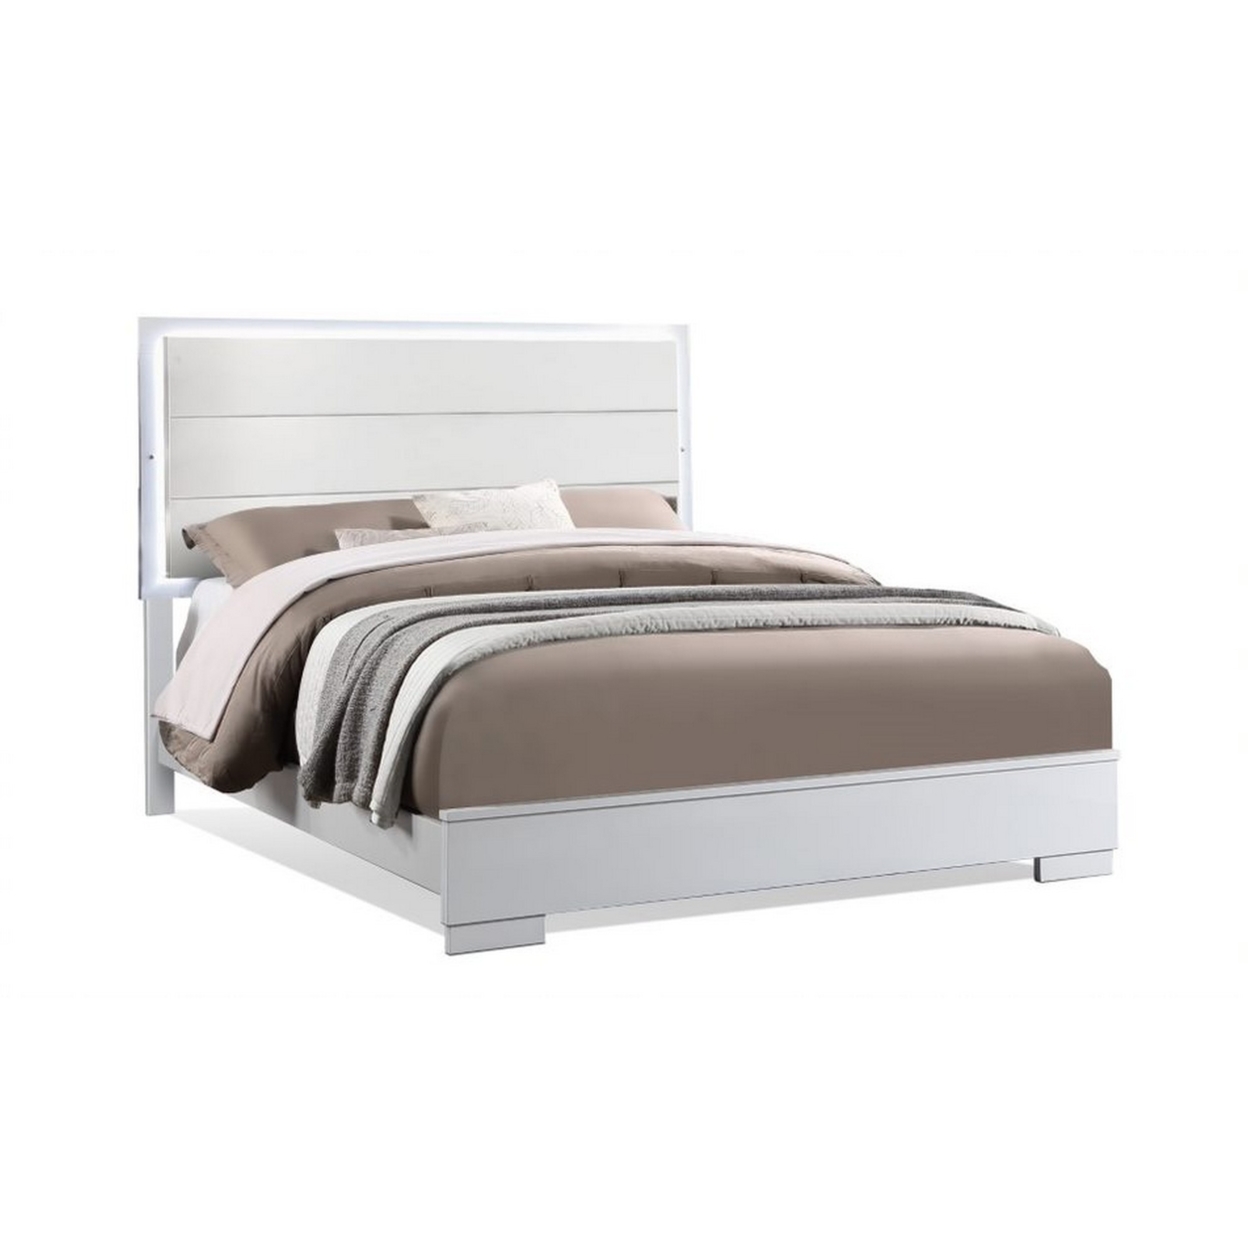 Vin Modern Queen Size Bed, Panel Headboard, LED Light, Crisp White Finish- Saltoro Sherpi